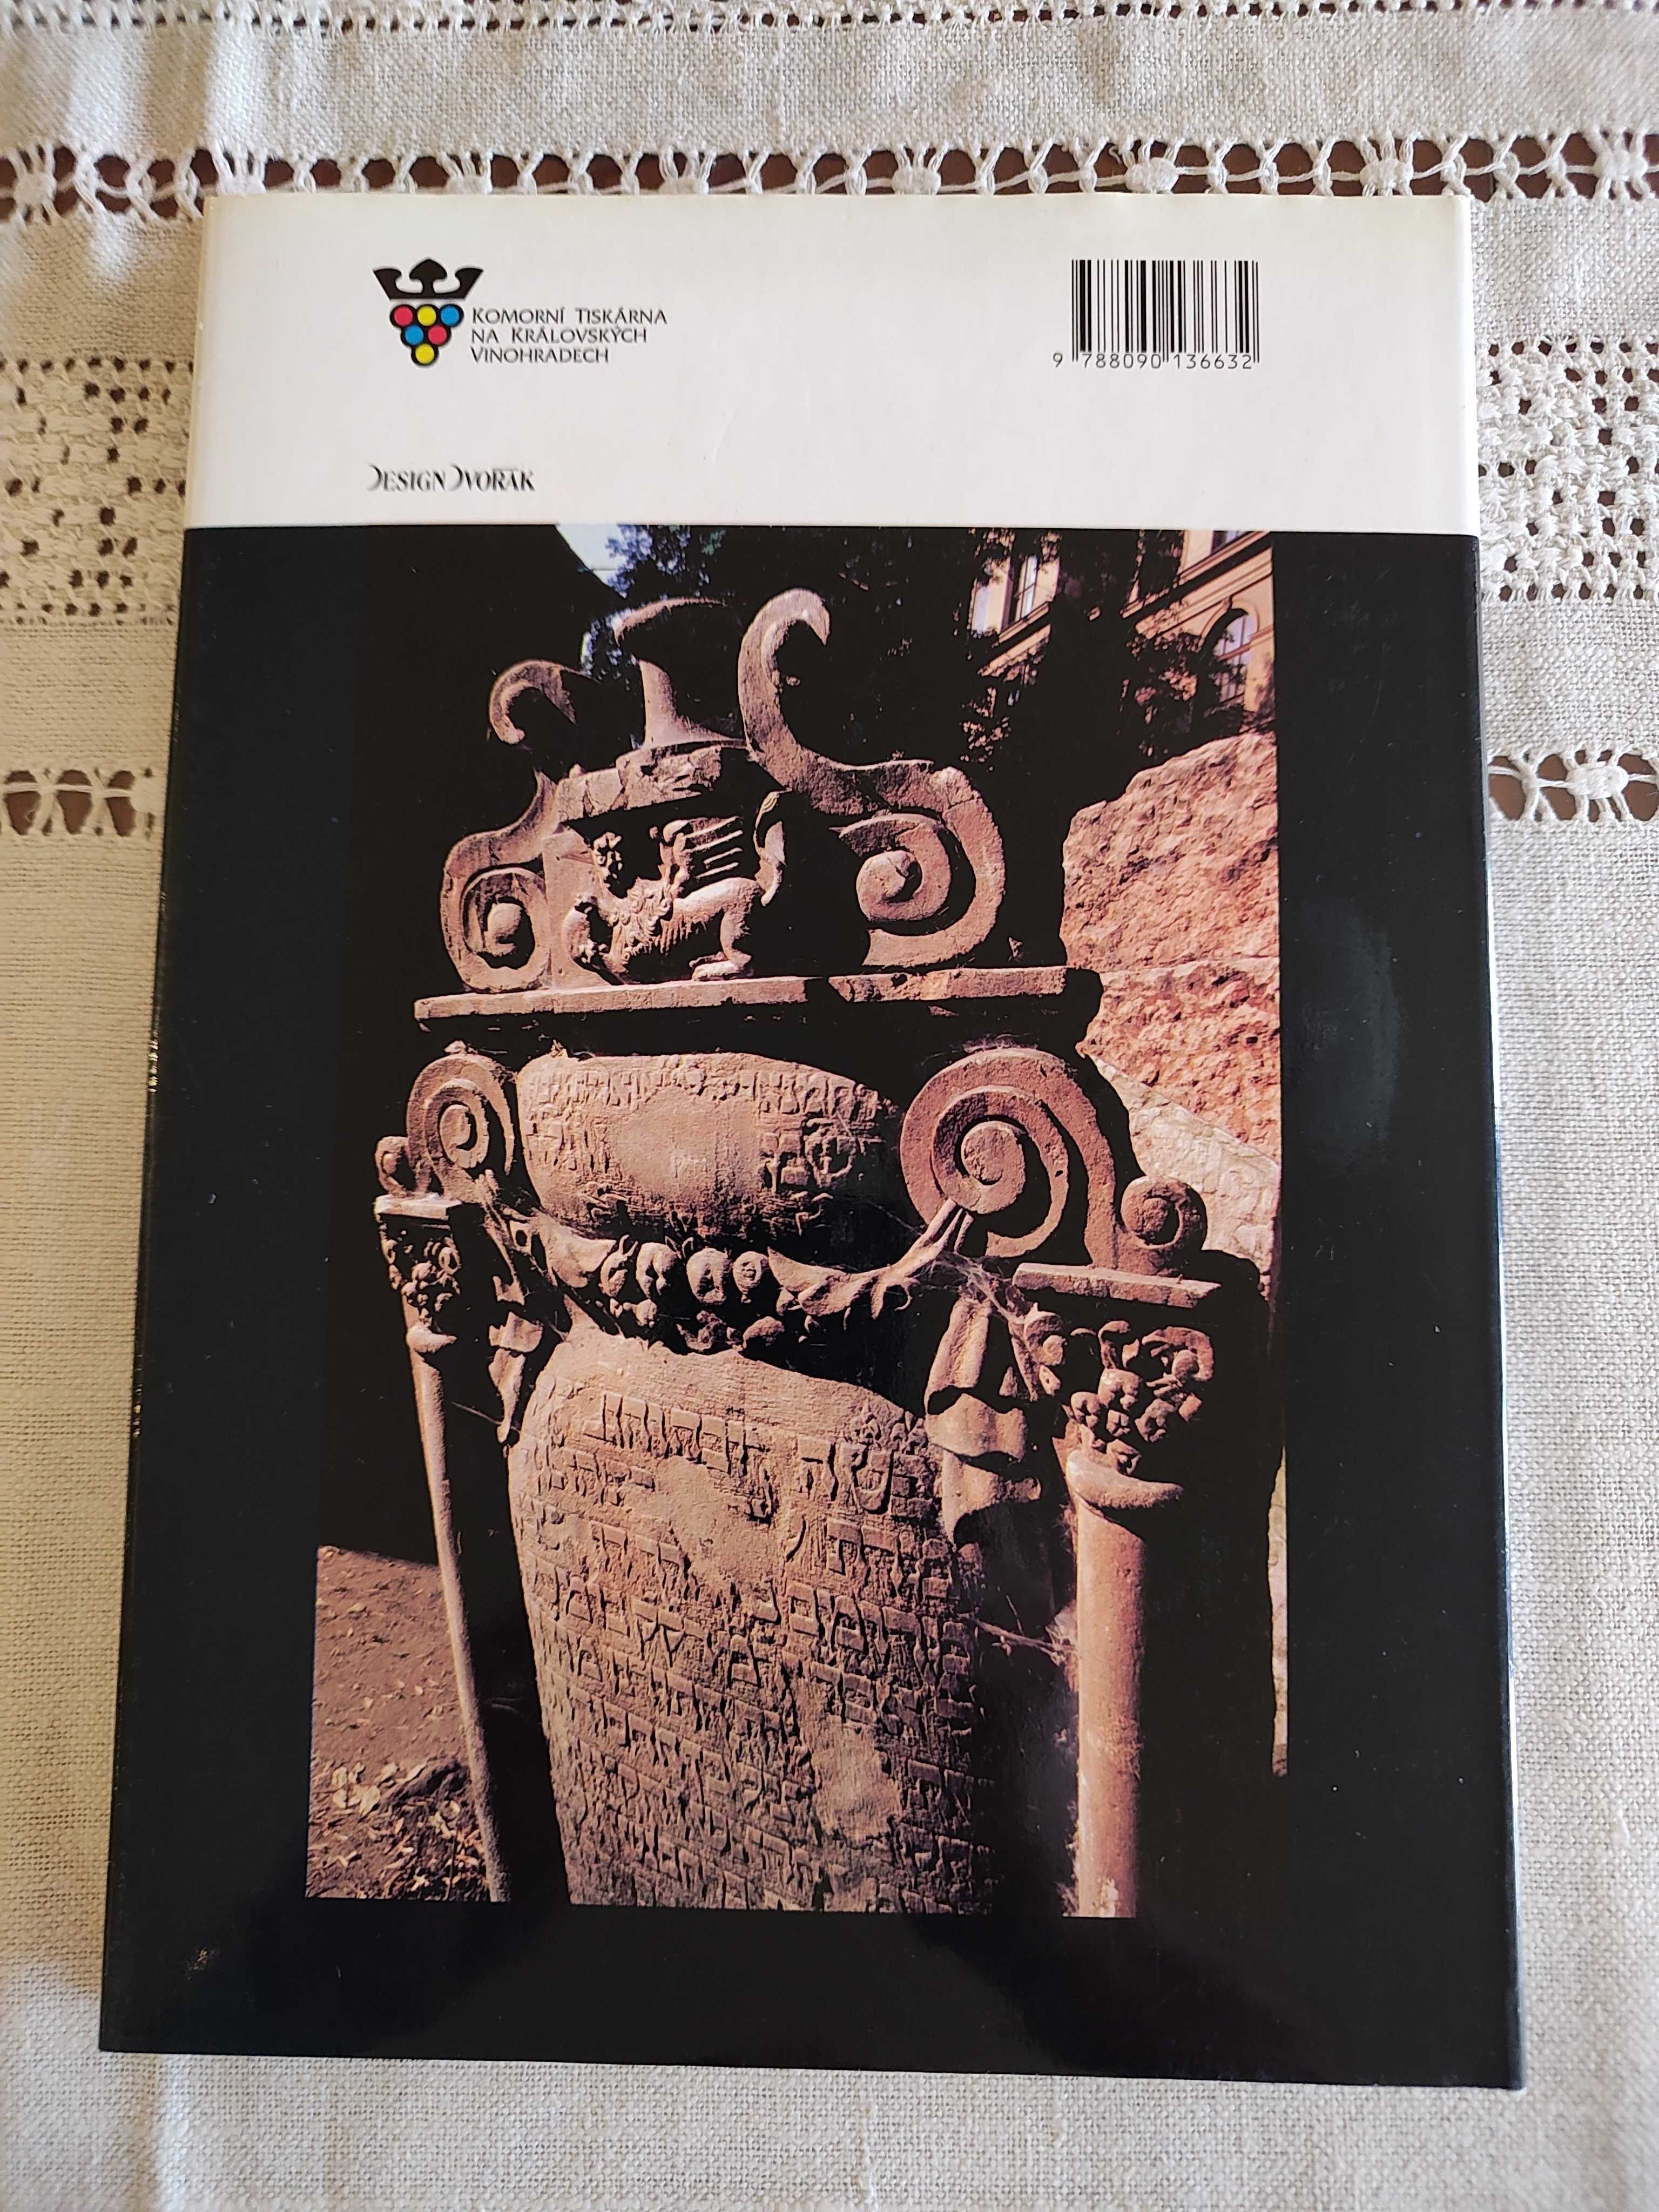 Книга с майсторски фотографии и текст на 4 езика: Фантастична Прага